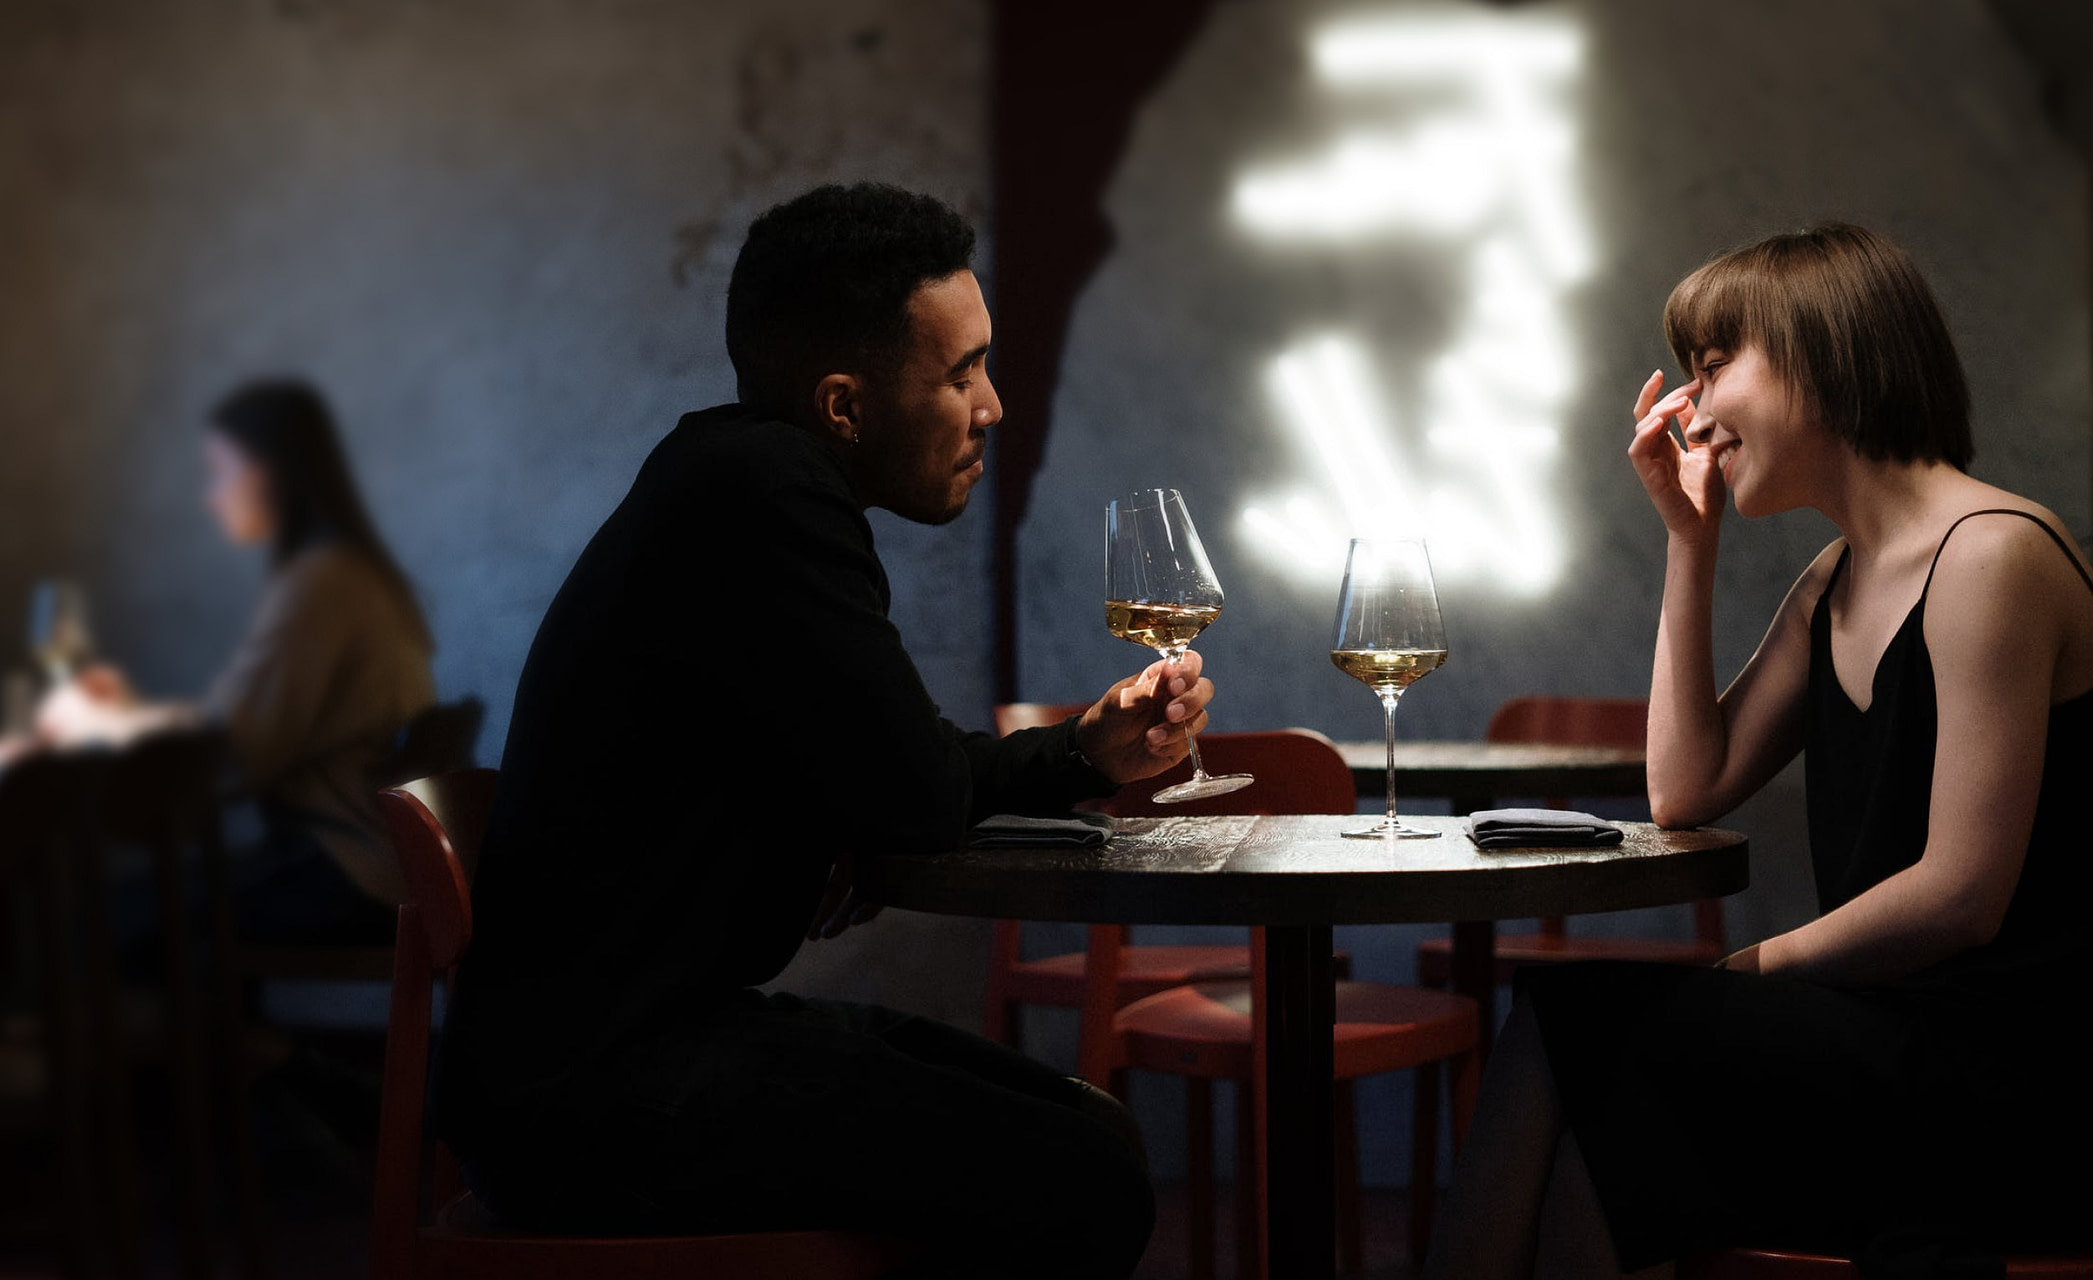 Mann und Frau sitzen an Restauranttisch und trinken ein Glas Wein. RAS Customer Services erleichtert Ihren Alltag und reserviert z.B. kurzfristig einen Tisch in Ihrem Lieblingsrestaurant.